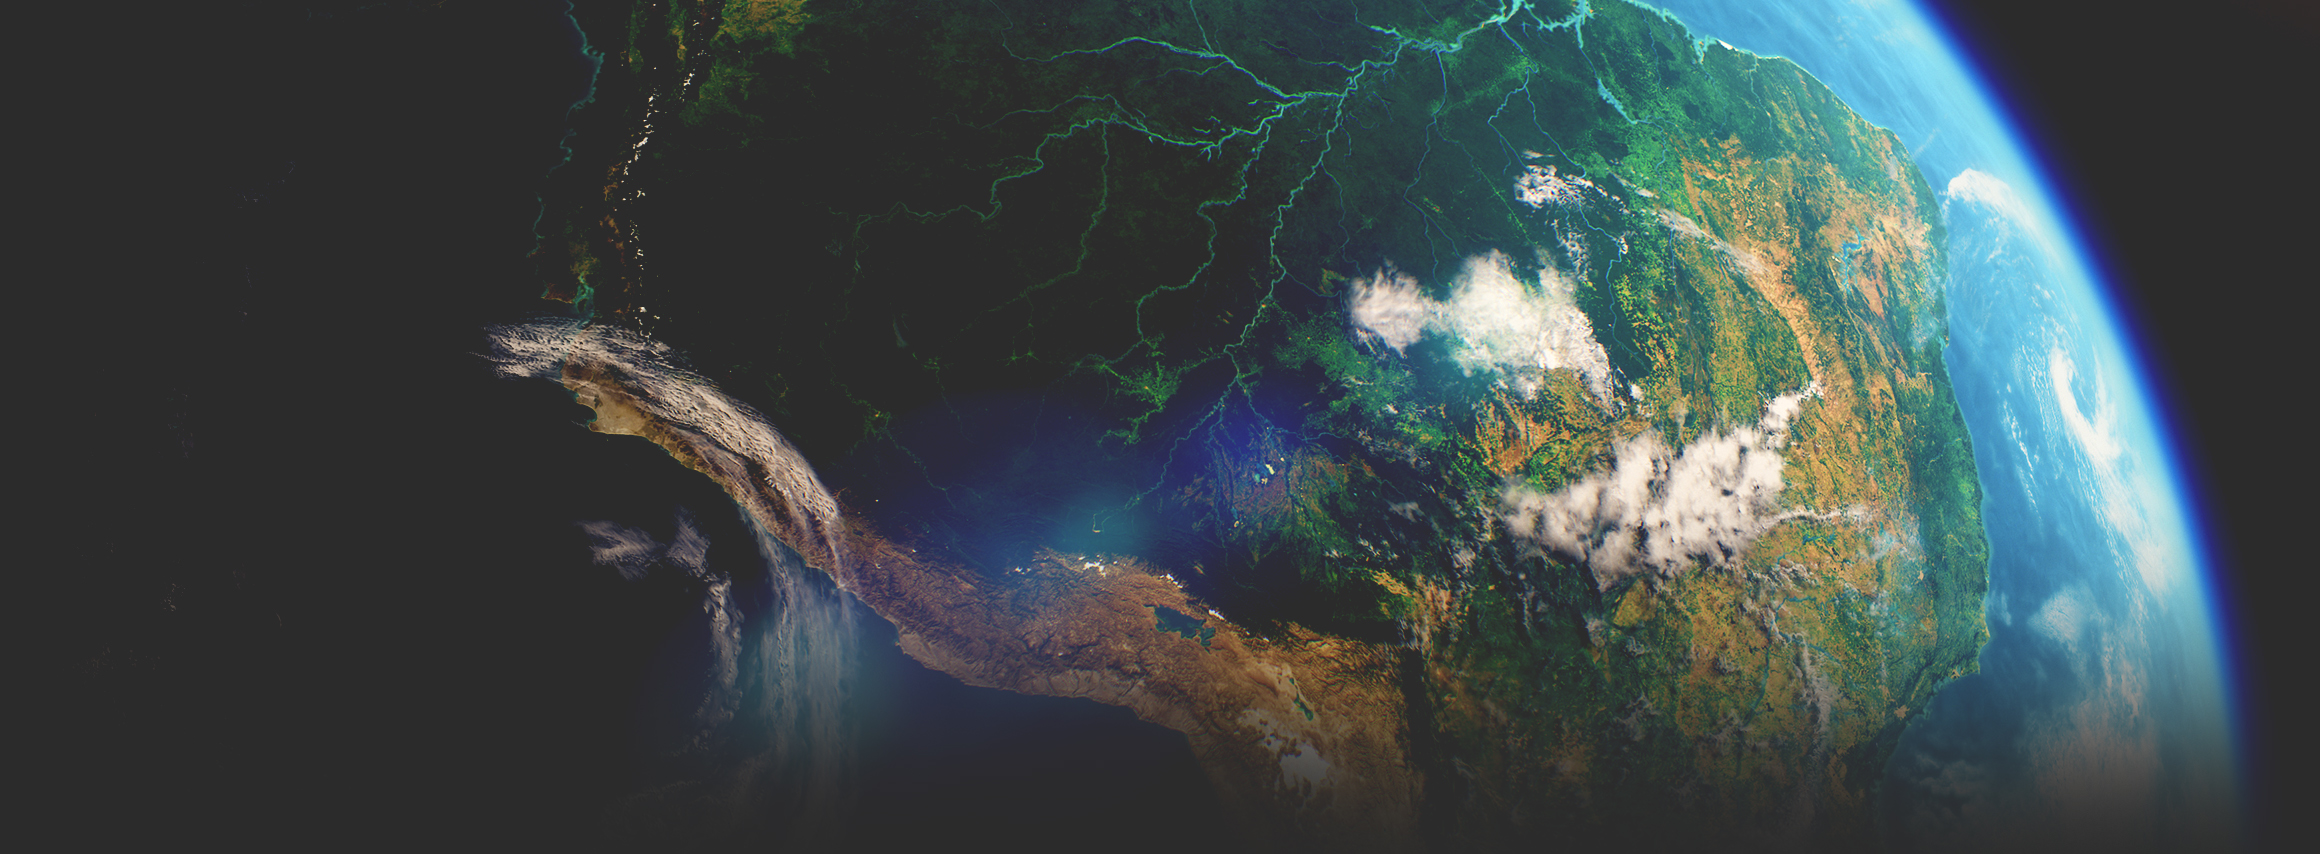 강이 흐르는 초록색 대륙, 바다, 대기를 우주에서 촬영한 위성 영상